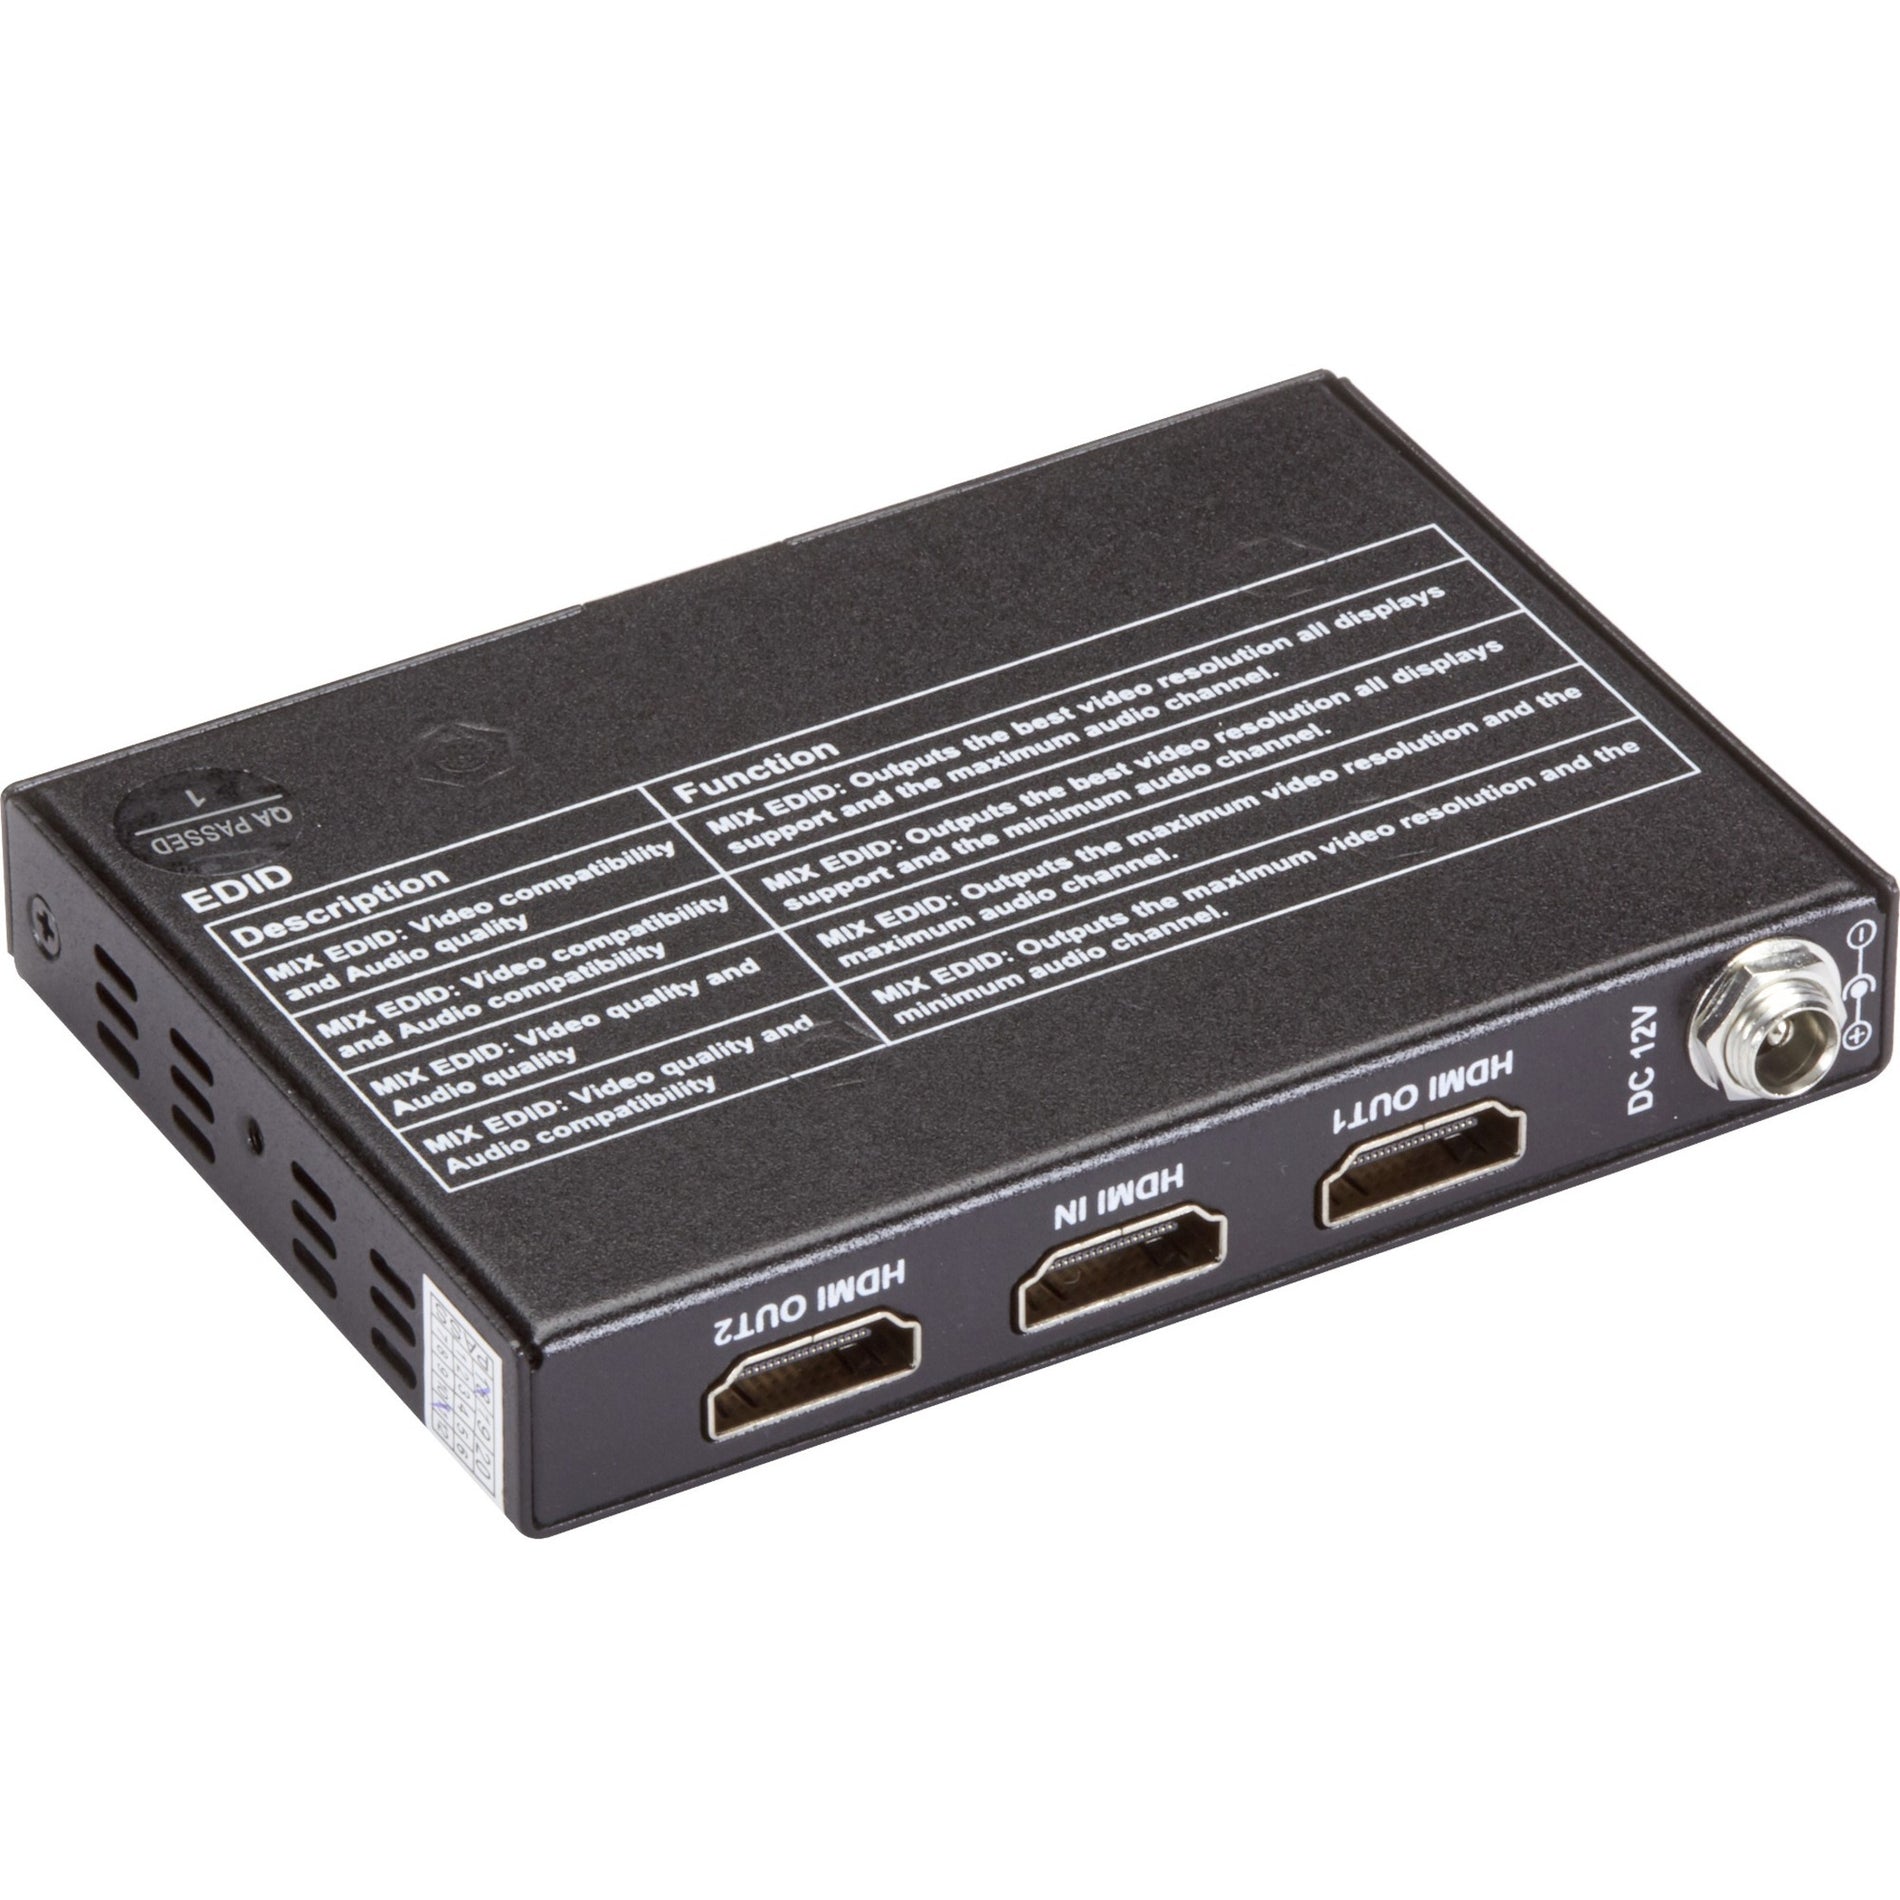 Black Box VSP-HDMI2-1X2 HDMI 2.0 4K60 Splitter - 1x2, Maximum Video Resolution 4096 x 2160, 3 Year Warranty